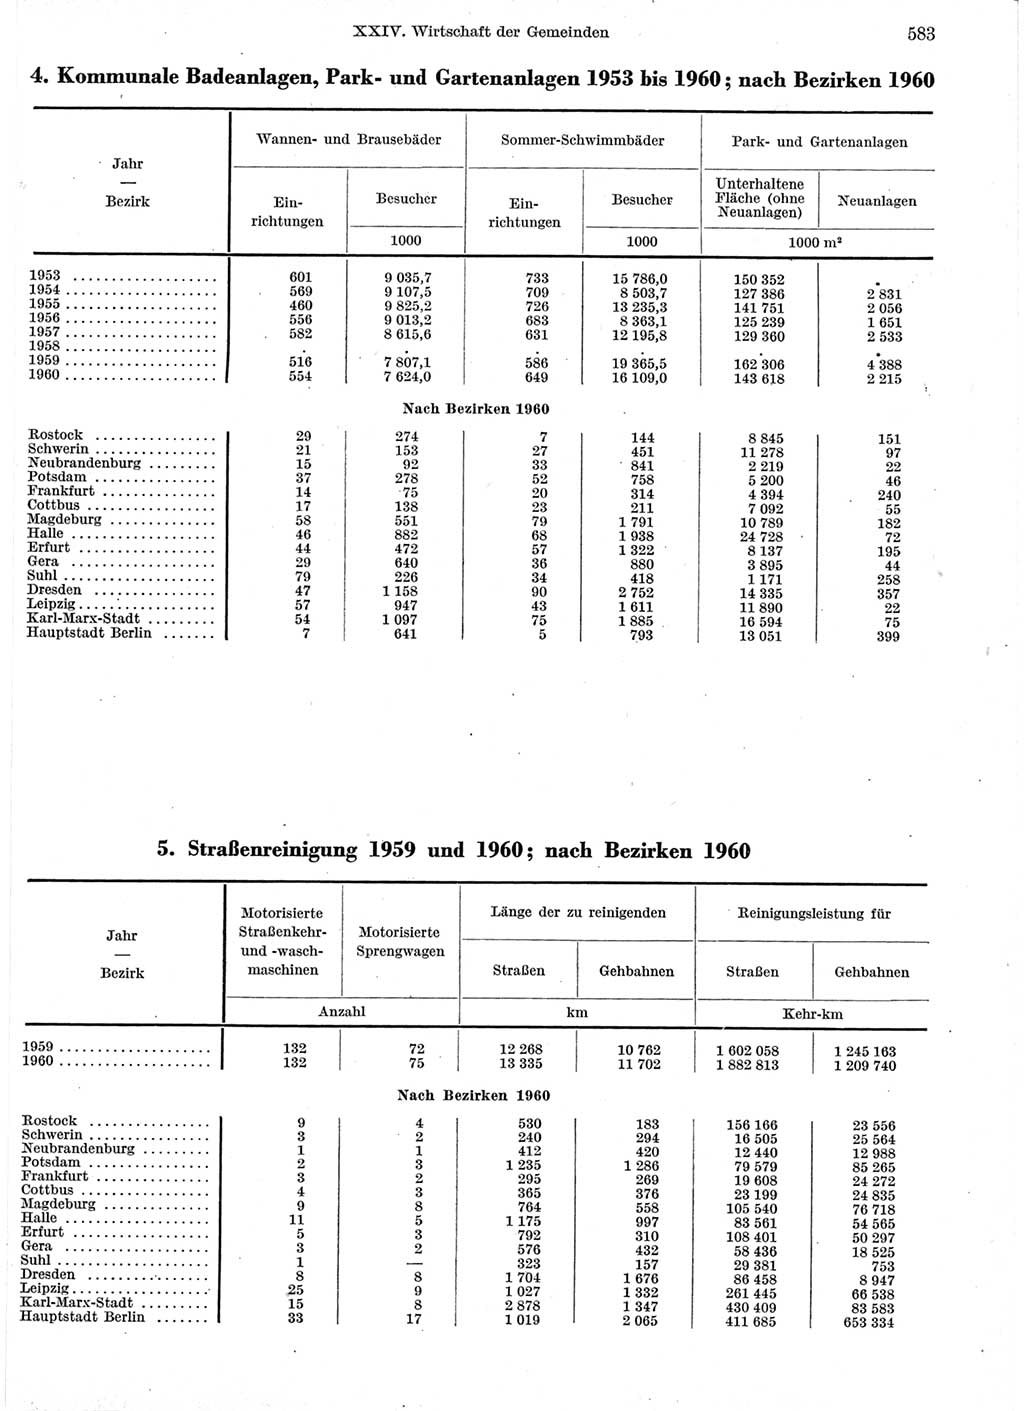 Statistisches Jahrbuch der Deutschen Demokratischen Republik (DDR) 1960-1961, Seite 583 (Stat. Jb. DDR 1960-1961, S. 583)